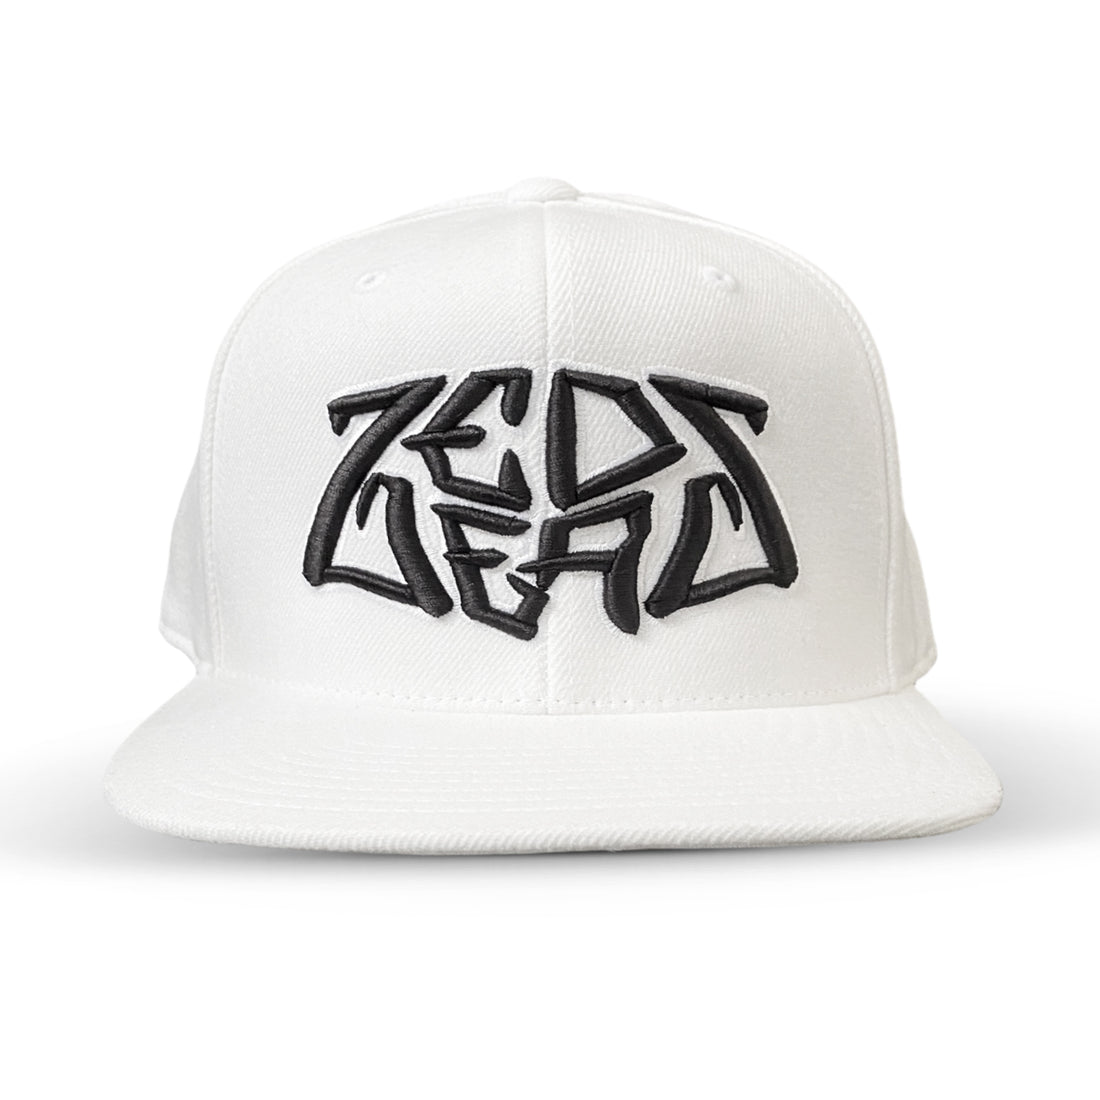 Zeds Dead - Z Drop - Snapback Hat - White